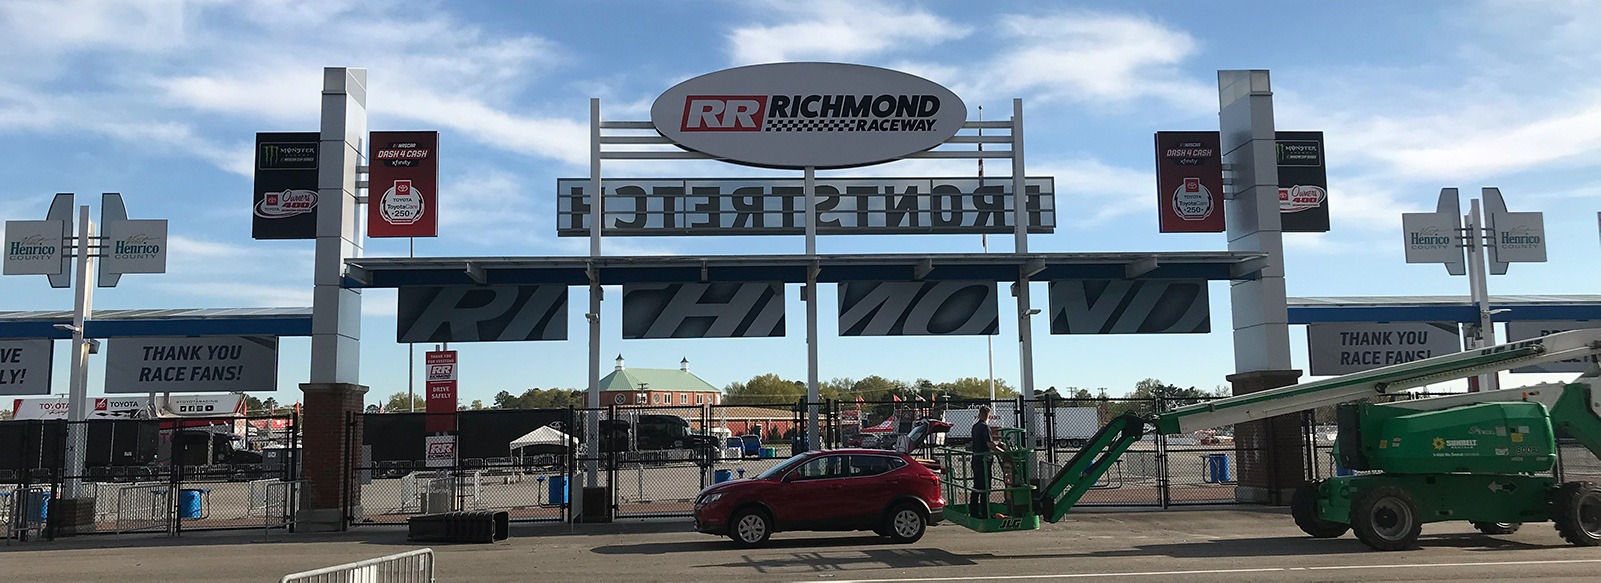 Richmond Raceway Frontstretch Archway Graphic Design